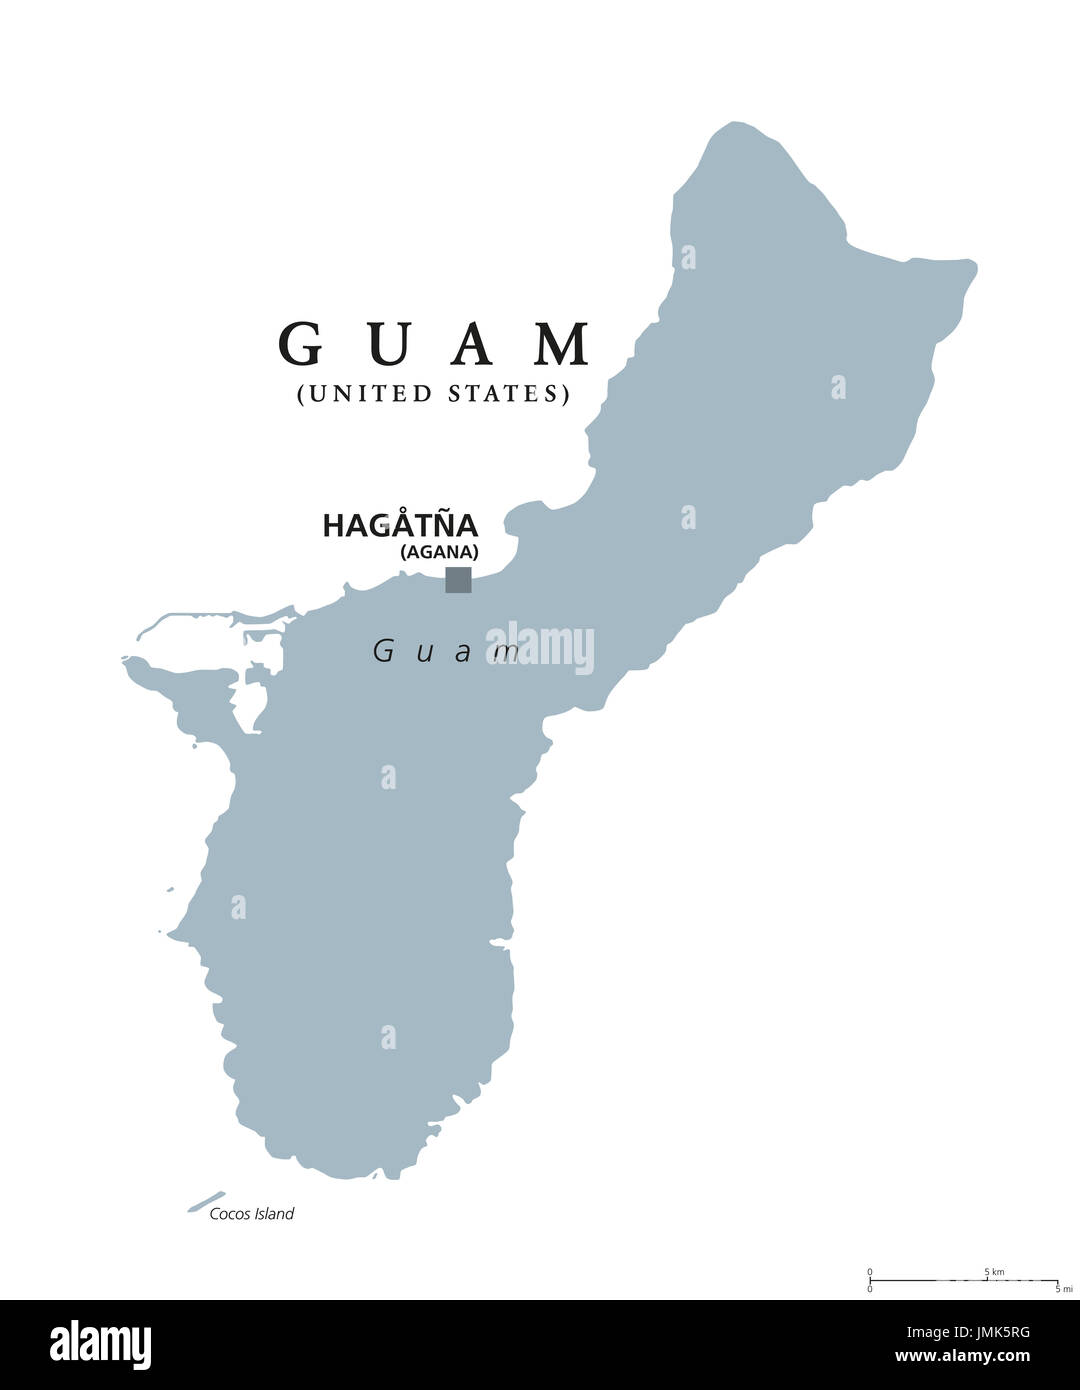 Guam mappa politico con capitale Hagatna, noto anche come Agana. E non costituite in società oganized territorio degli Stati Uniti nell'Oceano Pacifico occidentale. Foto Stock